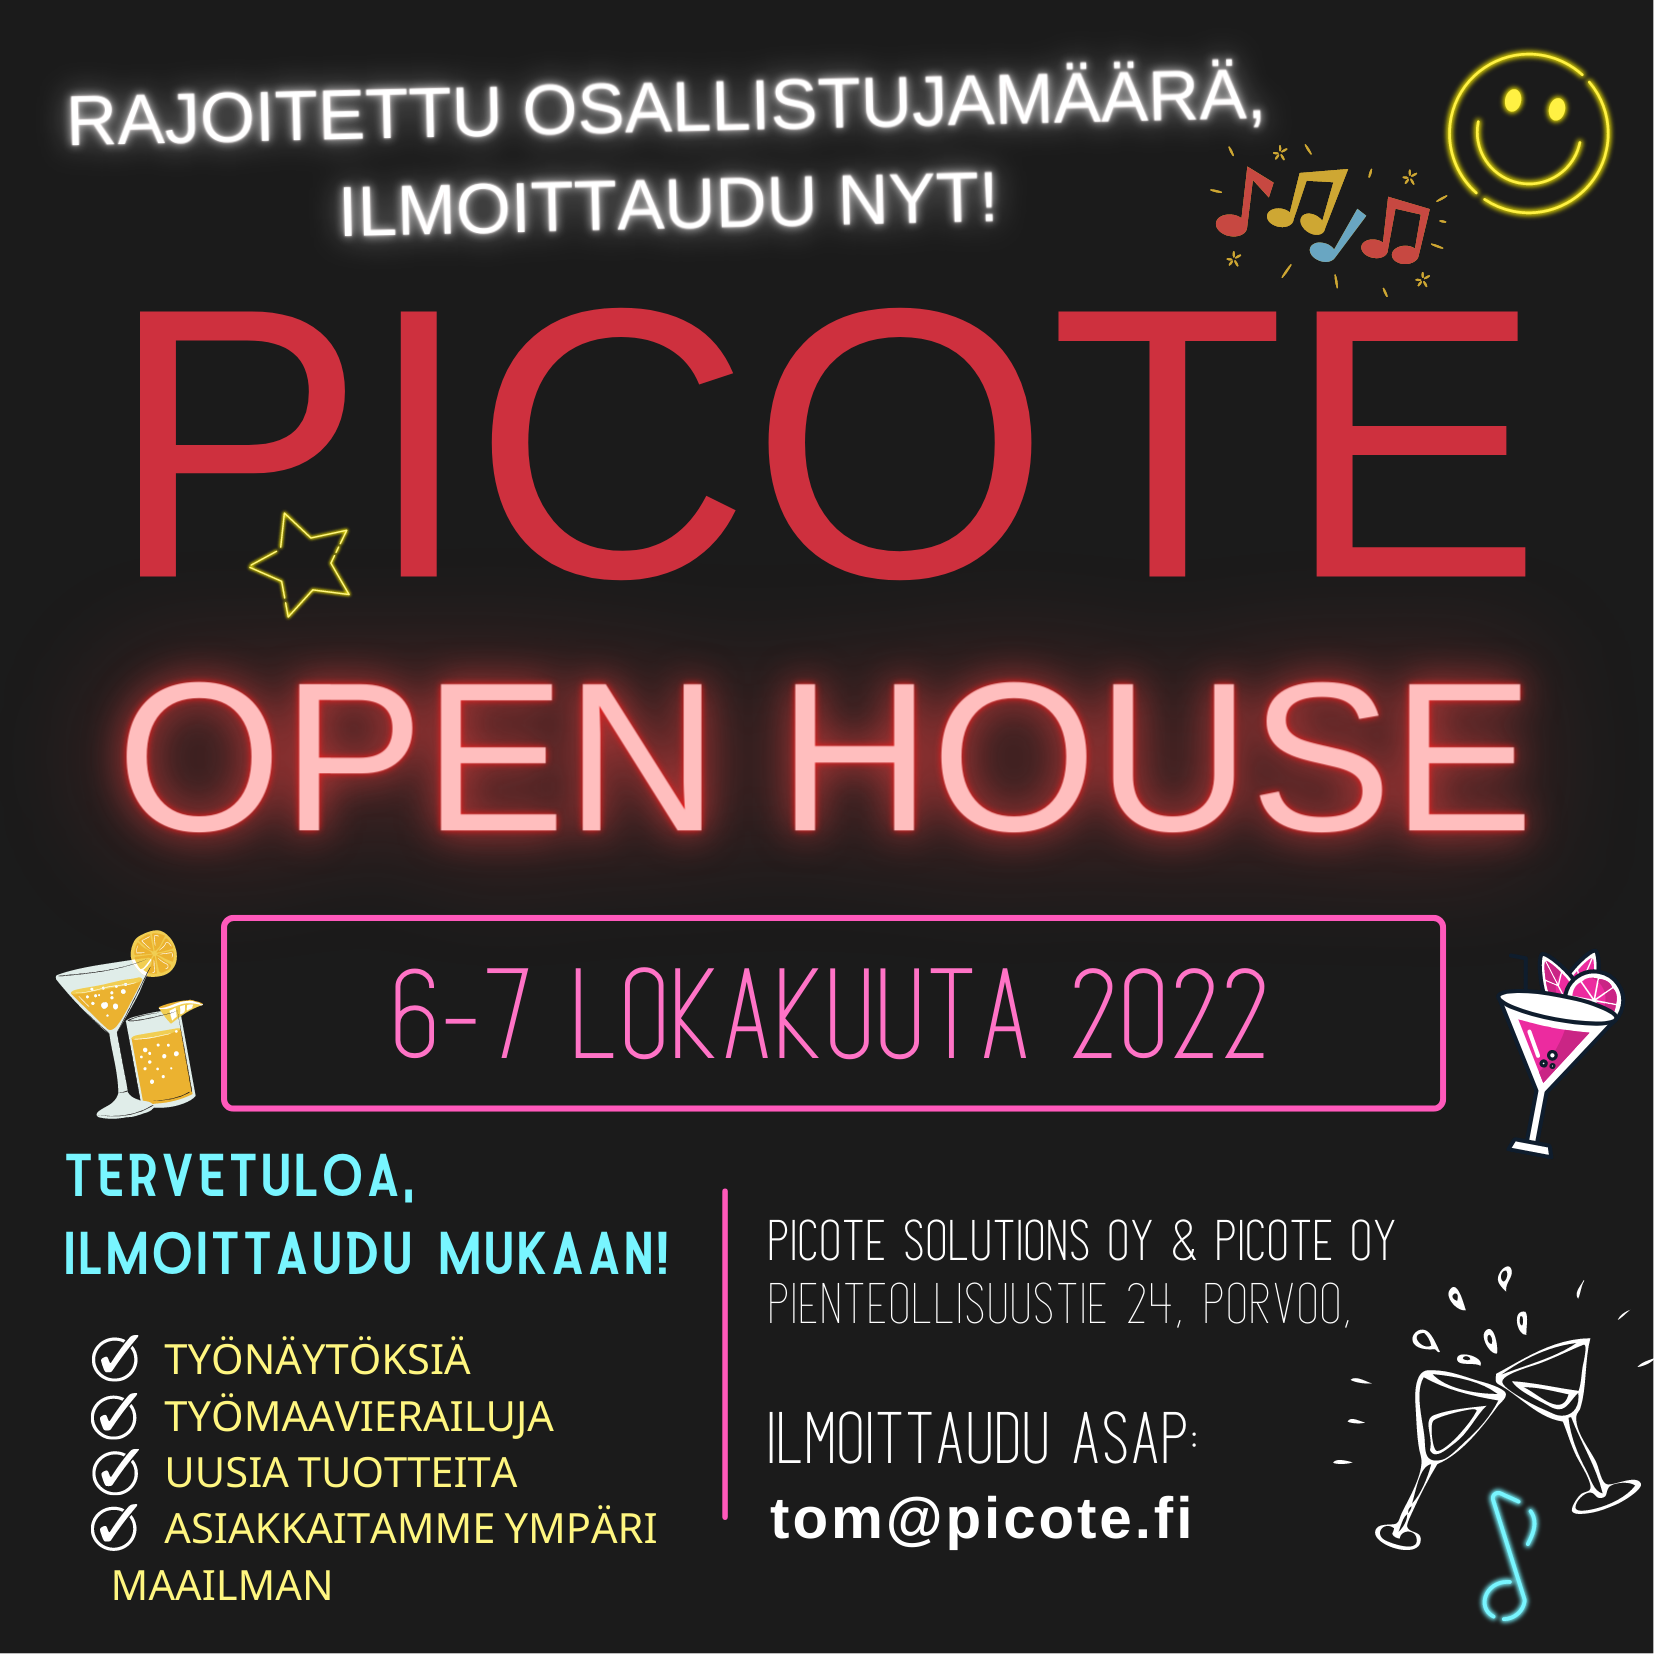 Picote Open House Porvoo 6.-7.10.2022